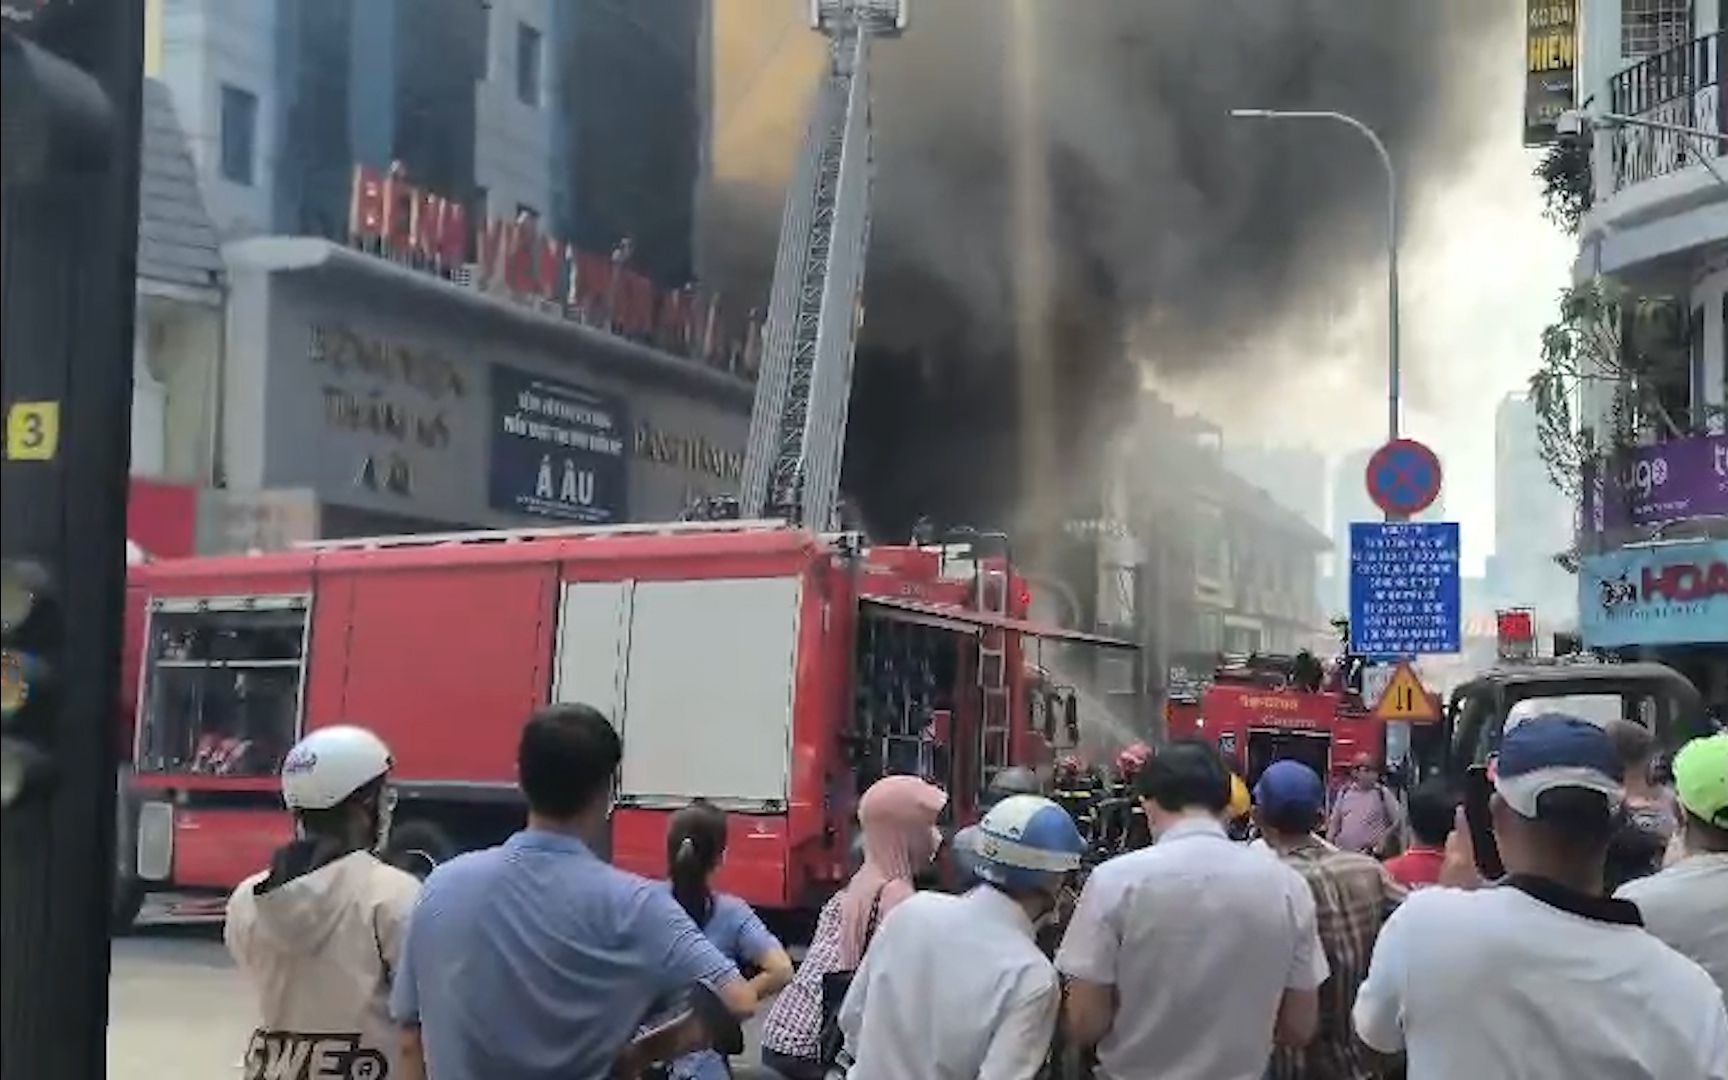 NÓNG: Đang cháy lớn gần chợ Bến Thành